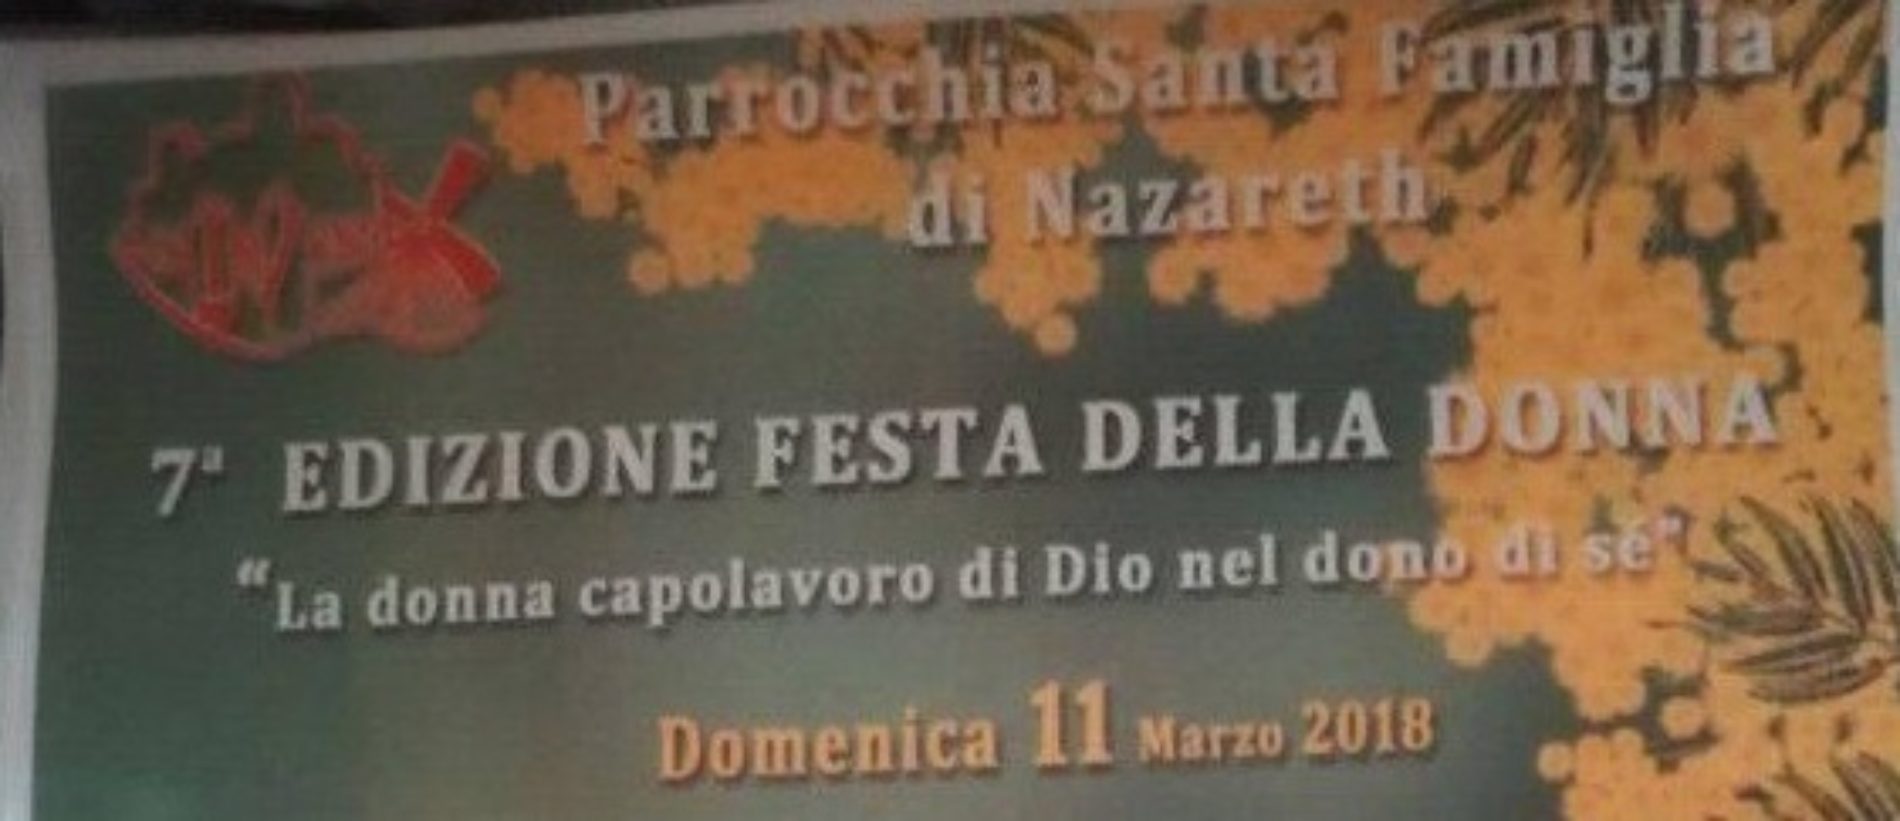 Parrocchia Santa Famiglia di Nazareth  organizza la 7ª Edizione della Festa della Donna